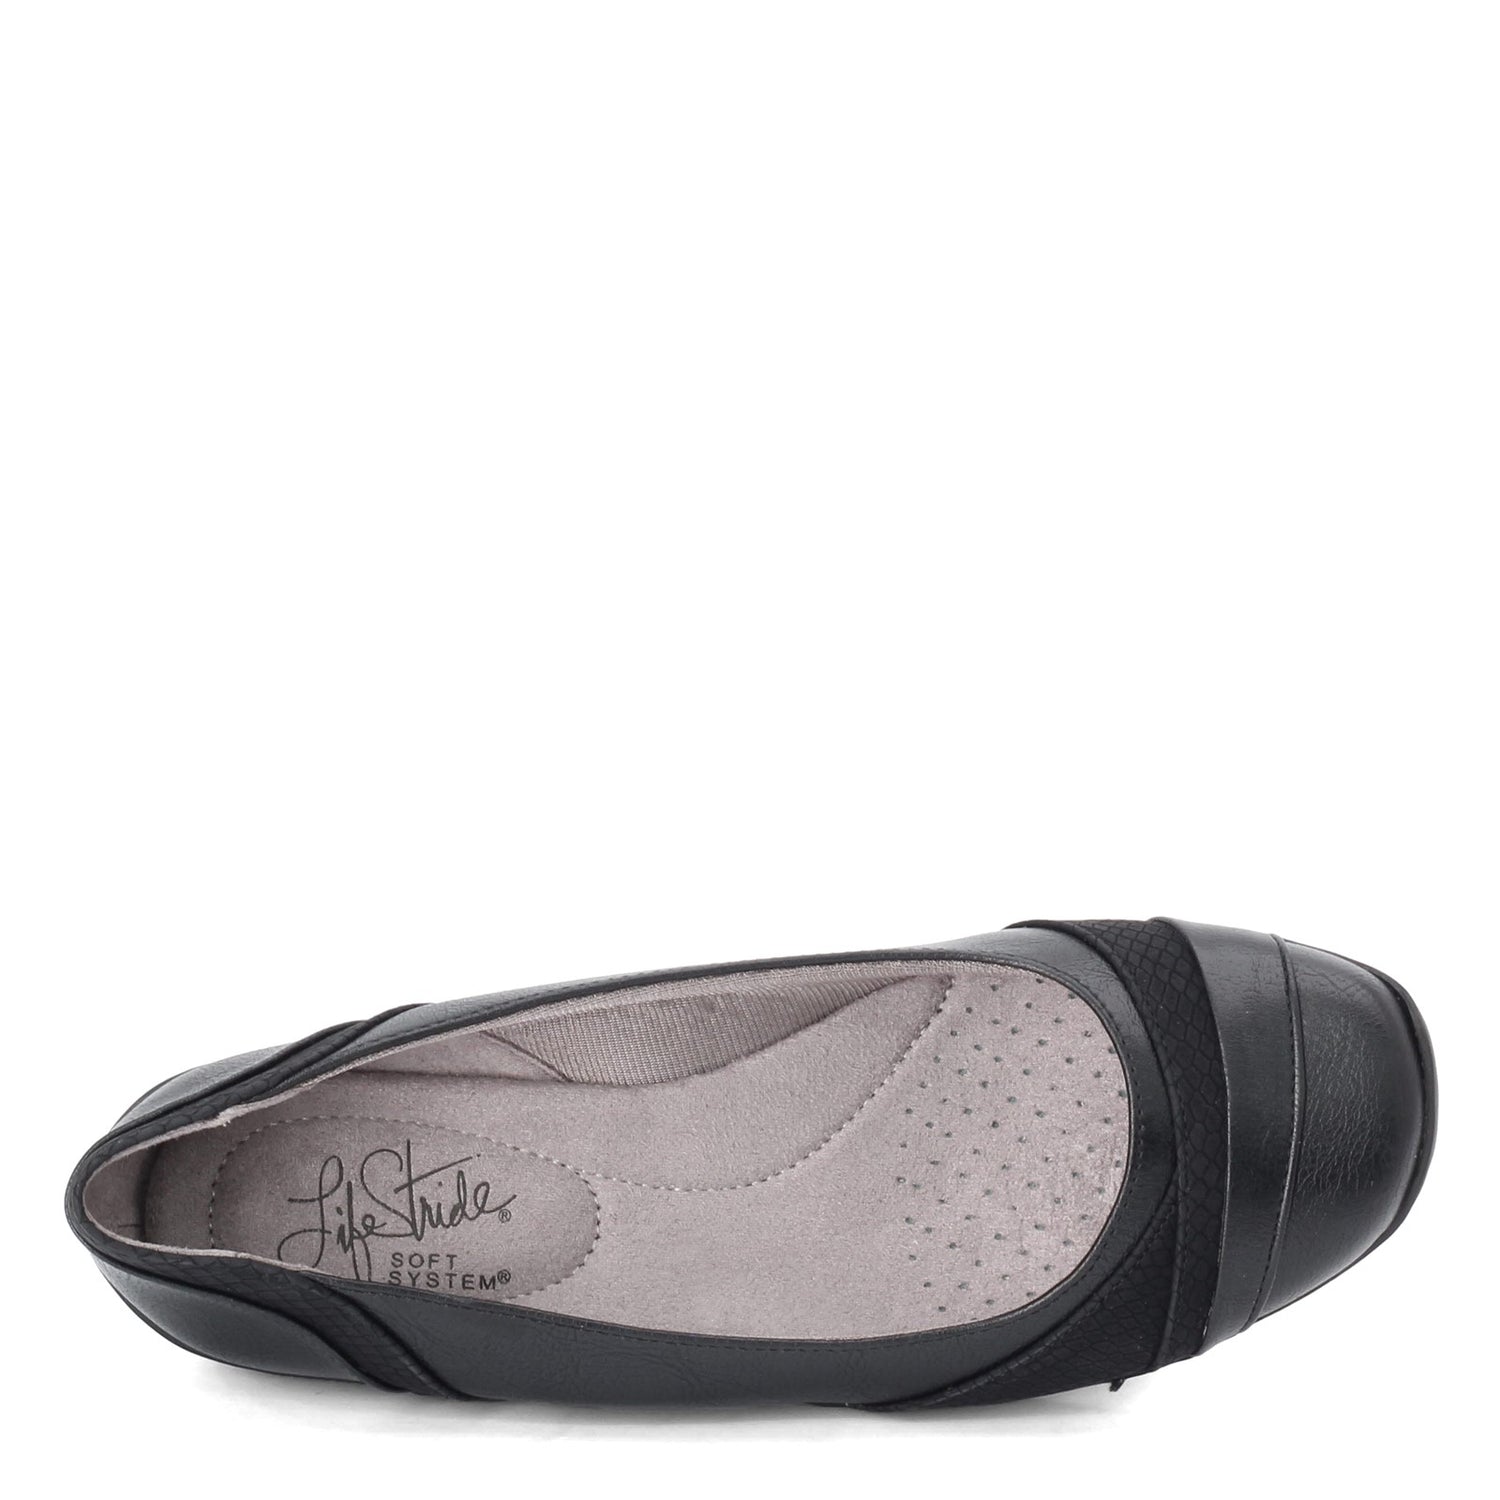 Peltz Shoes  Women's Lifestride Dig Flat Black E3354S5012